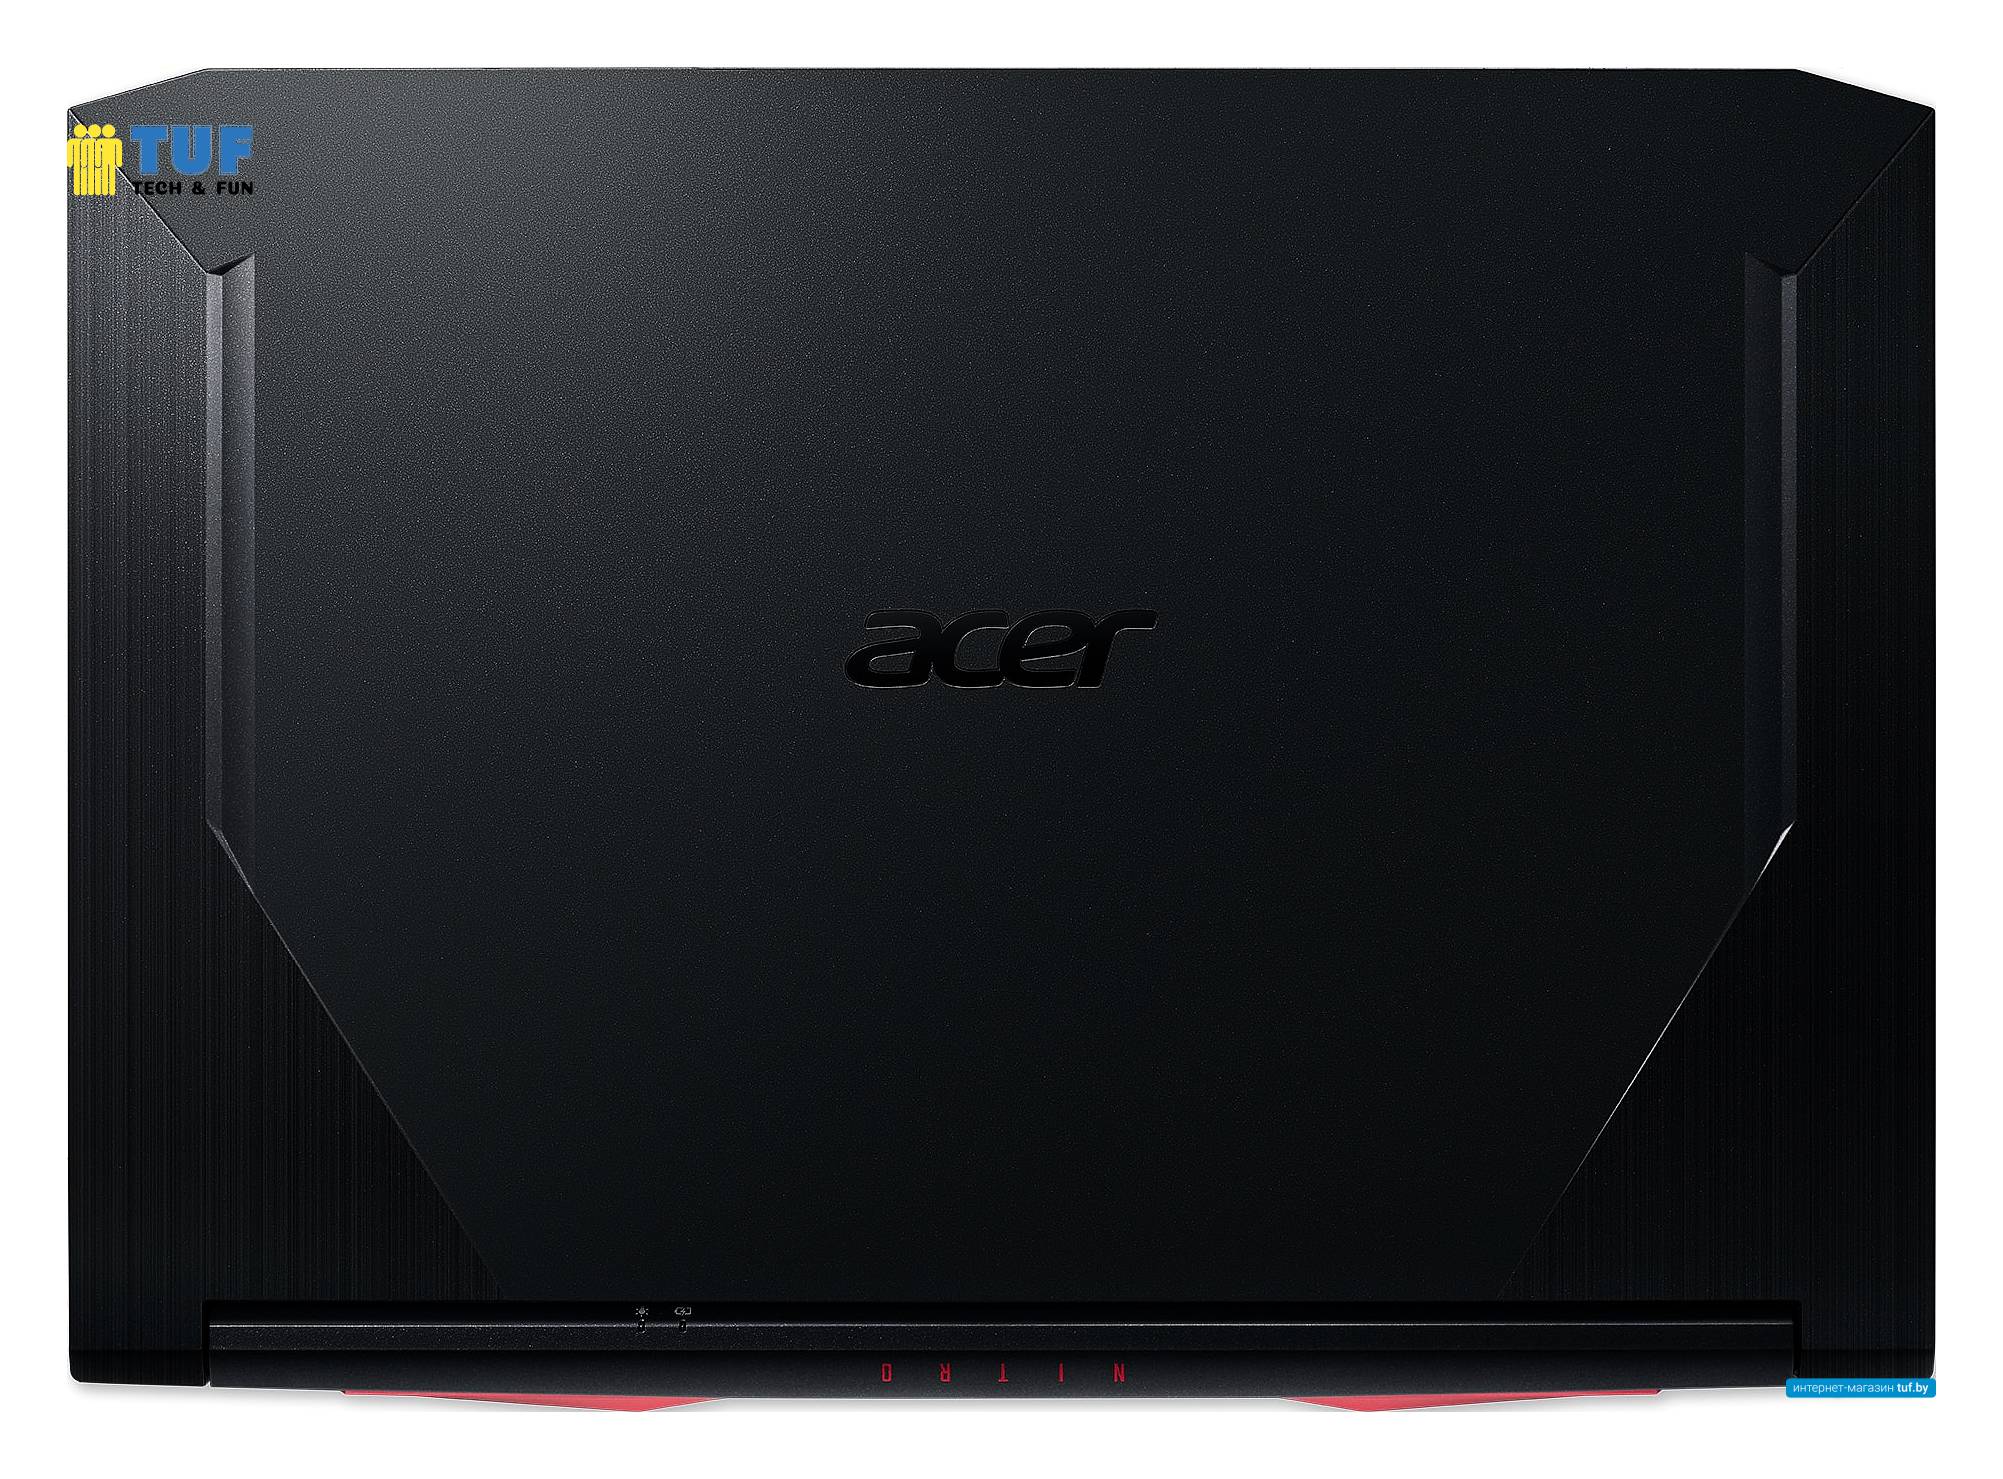 Игровой ноутбук Acer Nitro 5 AN515-55-7457 NH.Q7QER.007